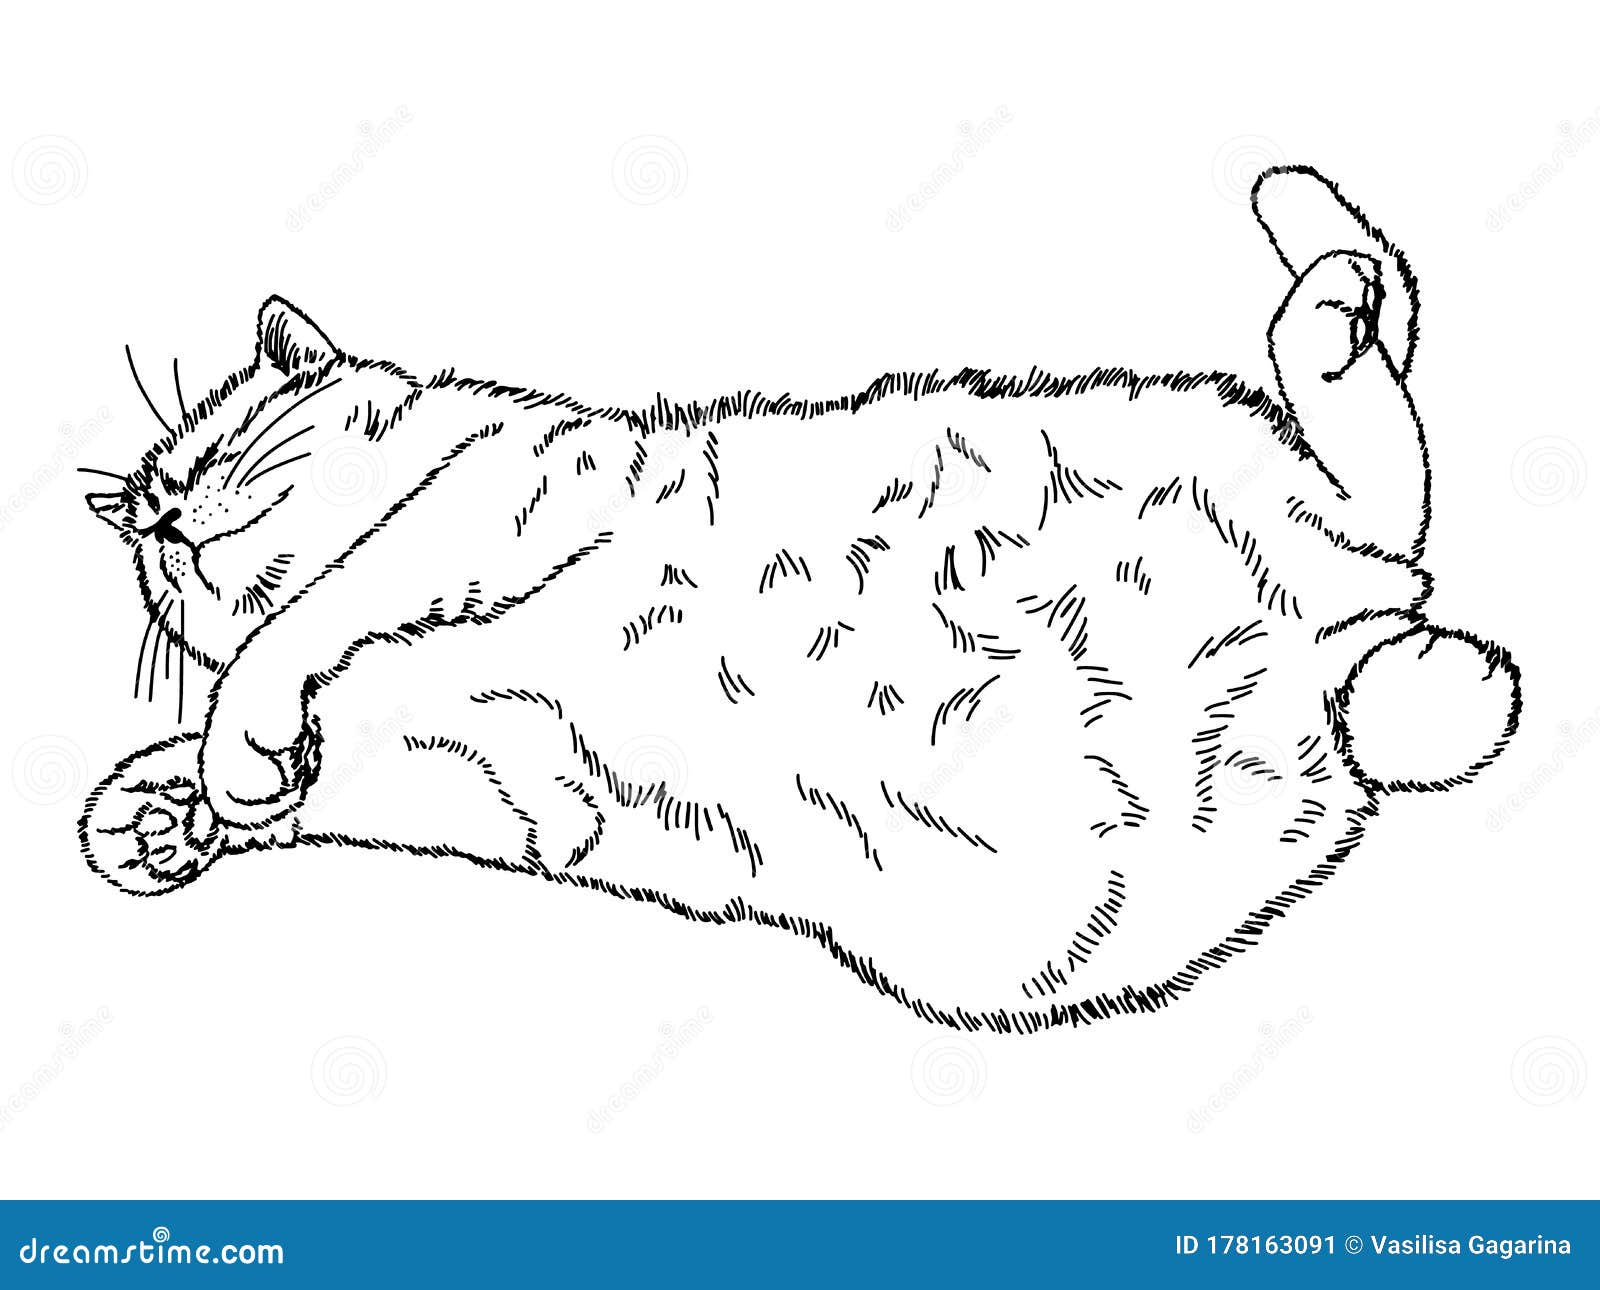 Cat nap раскраска. Зарисовки кота лежащего. Раскраска кошка лежит на спине. Котик лежит на спинке рисунок.